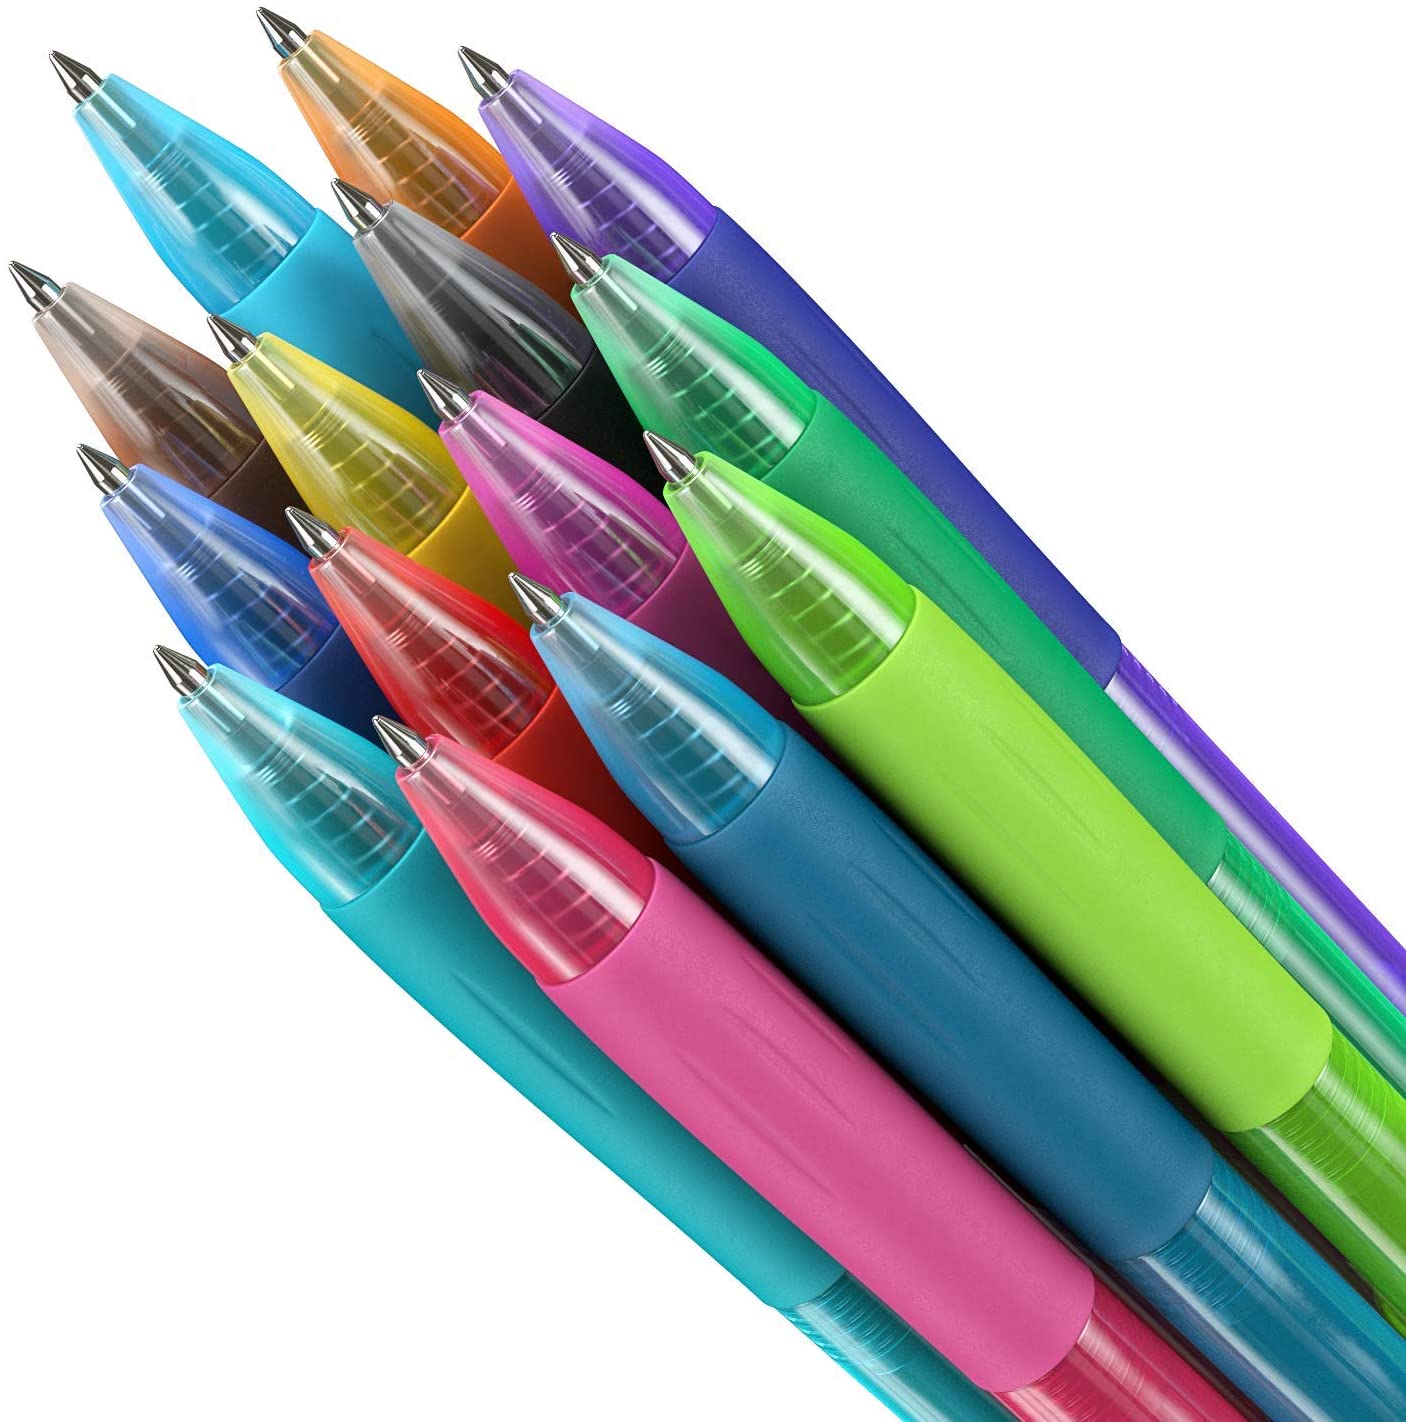 https://arteza.com/cdn/shop/products/retractable-gel-ink-pens-bright-colors-set-of-14_53YBpYVz.jpg?v=1701087524&width=1445